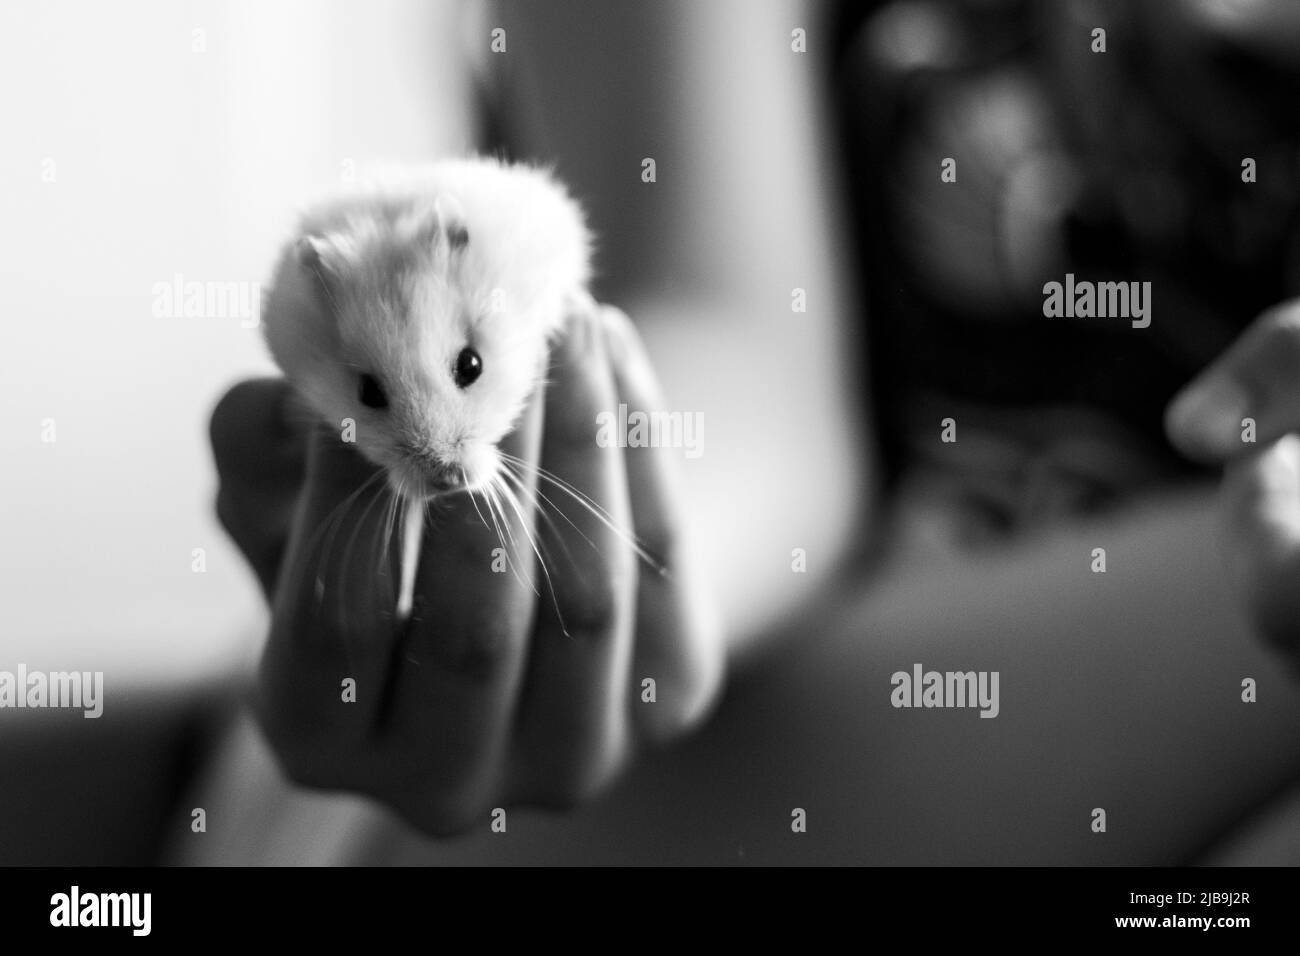 Bambini che maneggiano un piccolo animale, criceto russo bianco. Giocare con criceto, fotografia in bianco e nero, ritratto criceto. Foto Stock